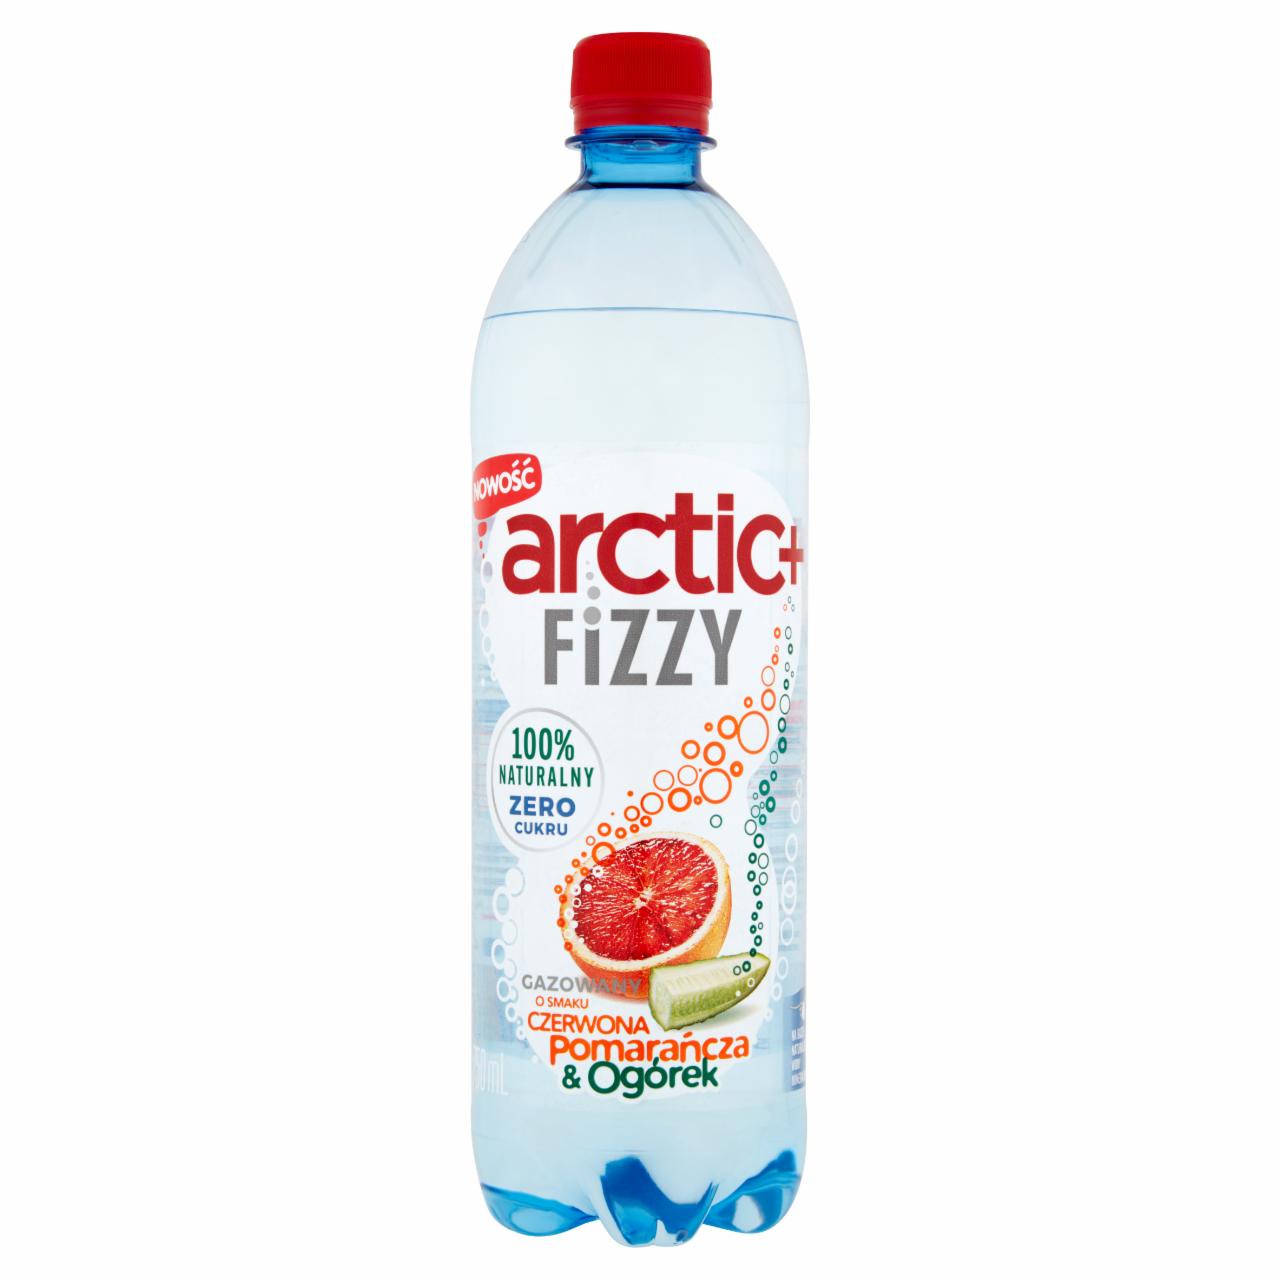 Zdjęcia - Arctic+ Fizzy Napój gazowany o smaku czerwona pomarańcza & ogórek 750 ml